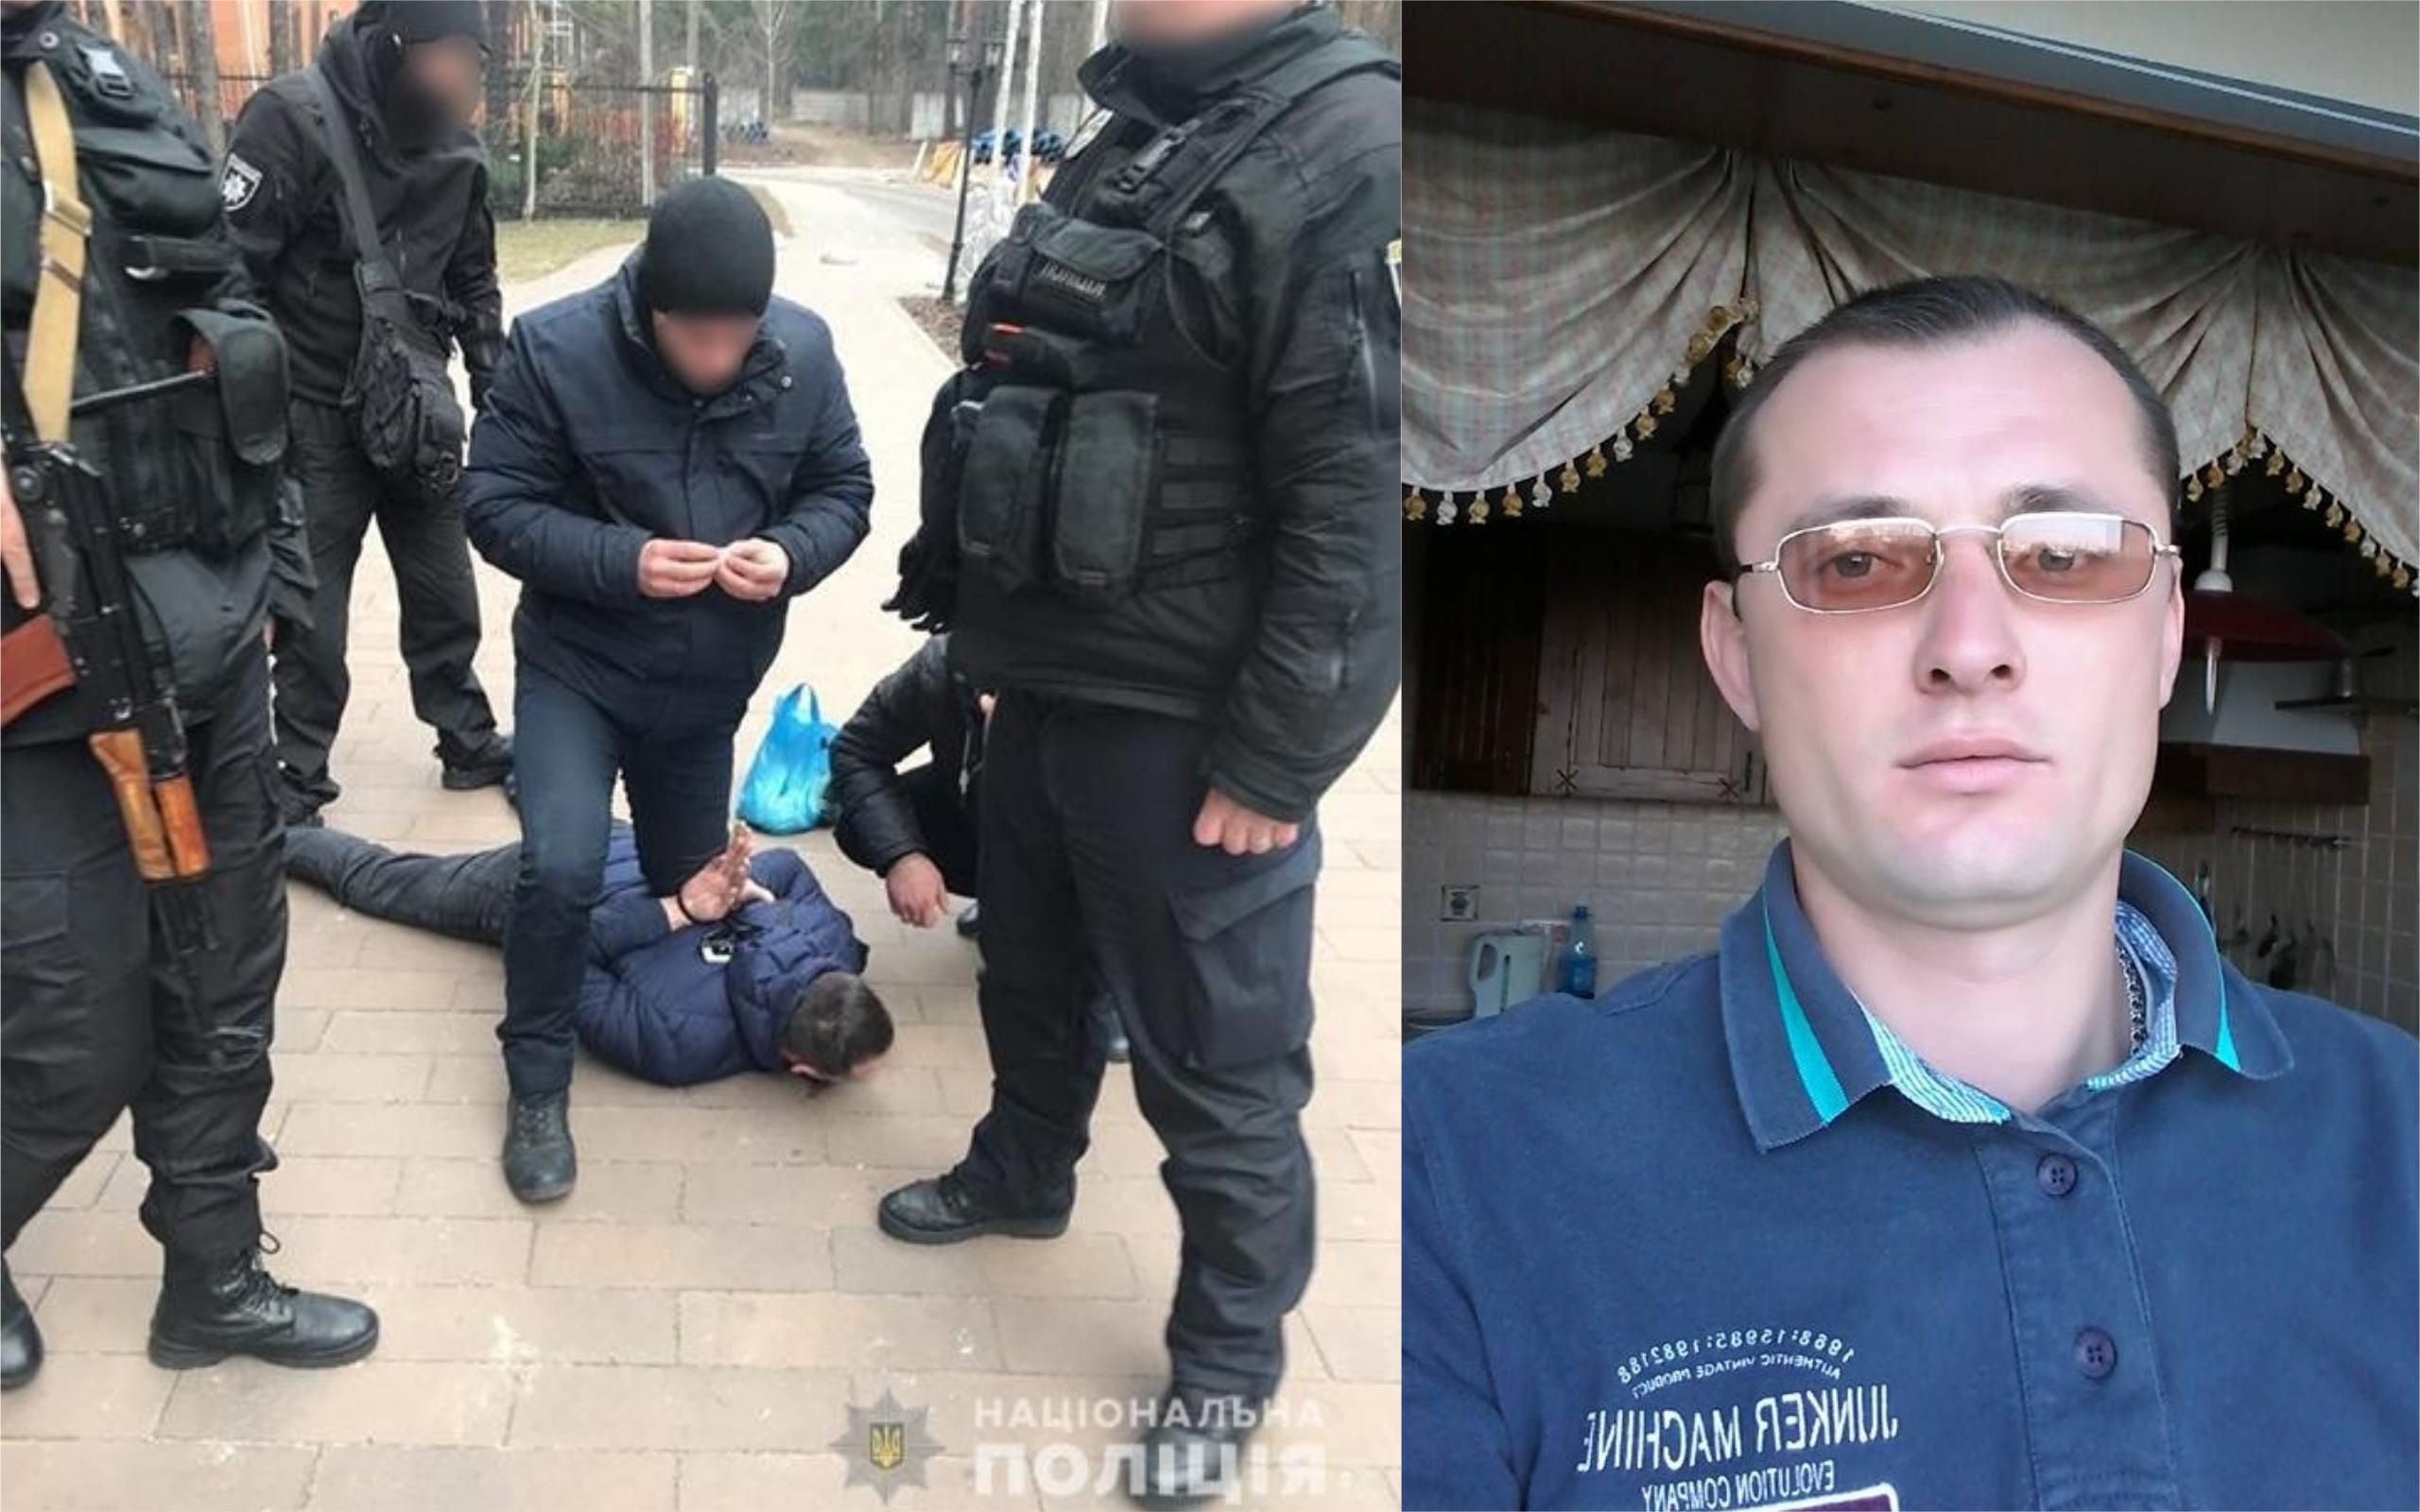 У Києві донецький бойовик намагався застрелити двох поліцейських: фото і відео 18+